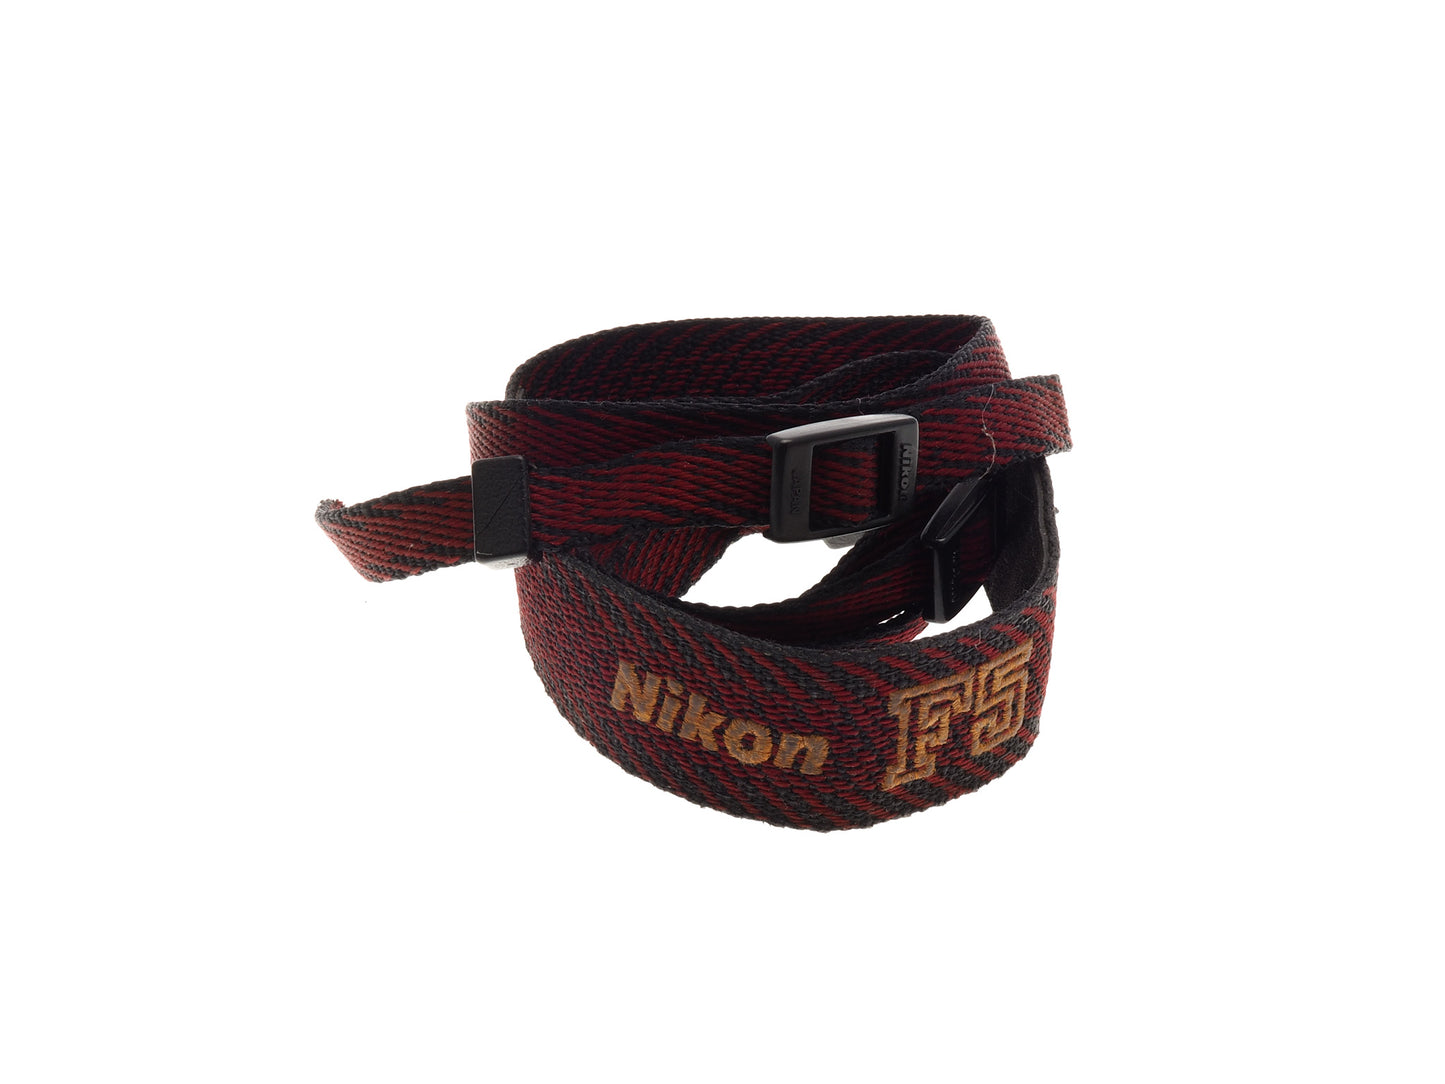 Nikon F5 Neck Strap - Accessory